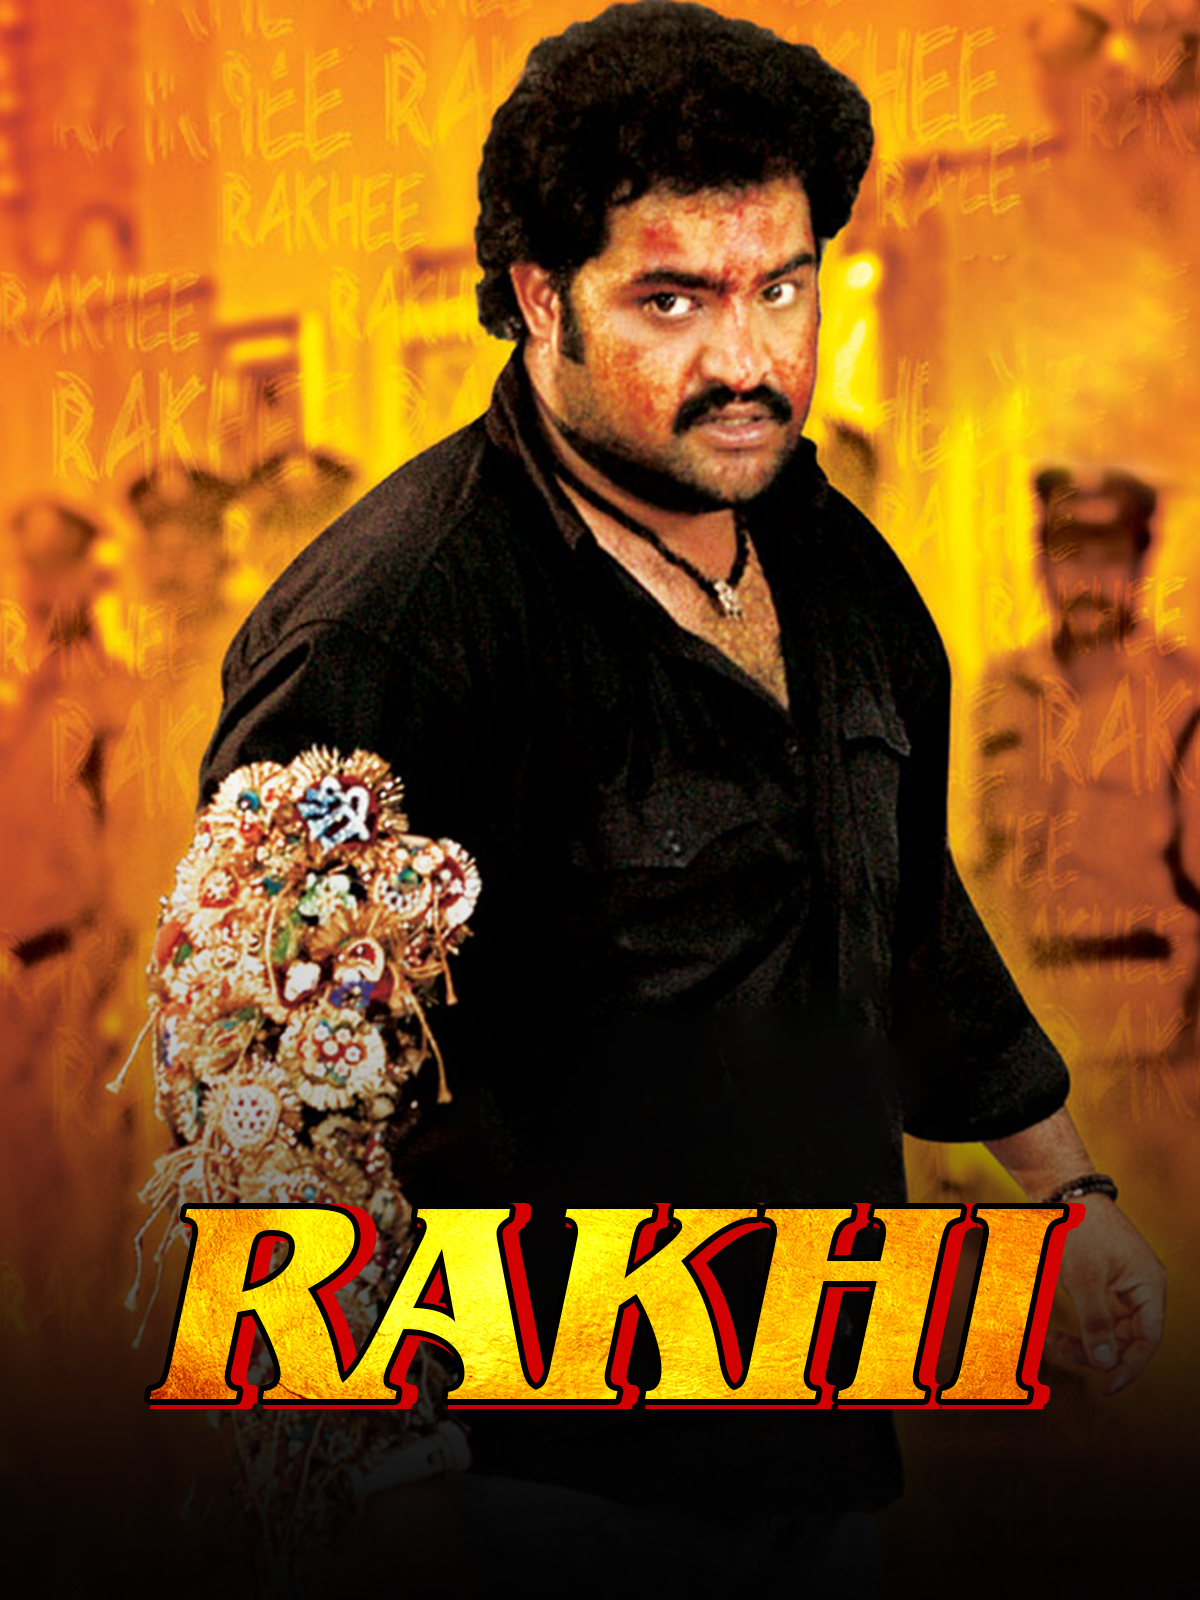 Rakhi (2006) Screenshot 1 